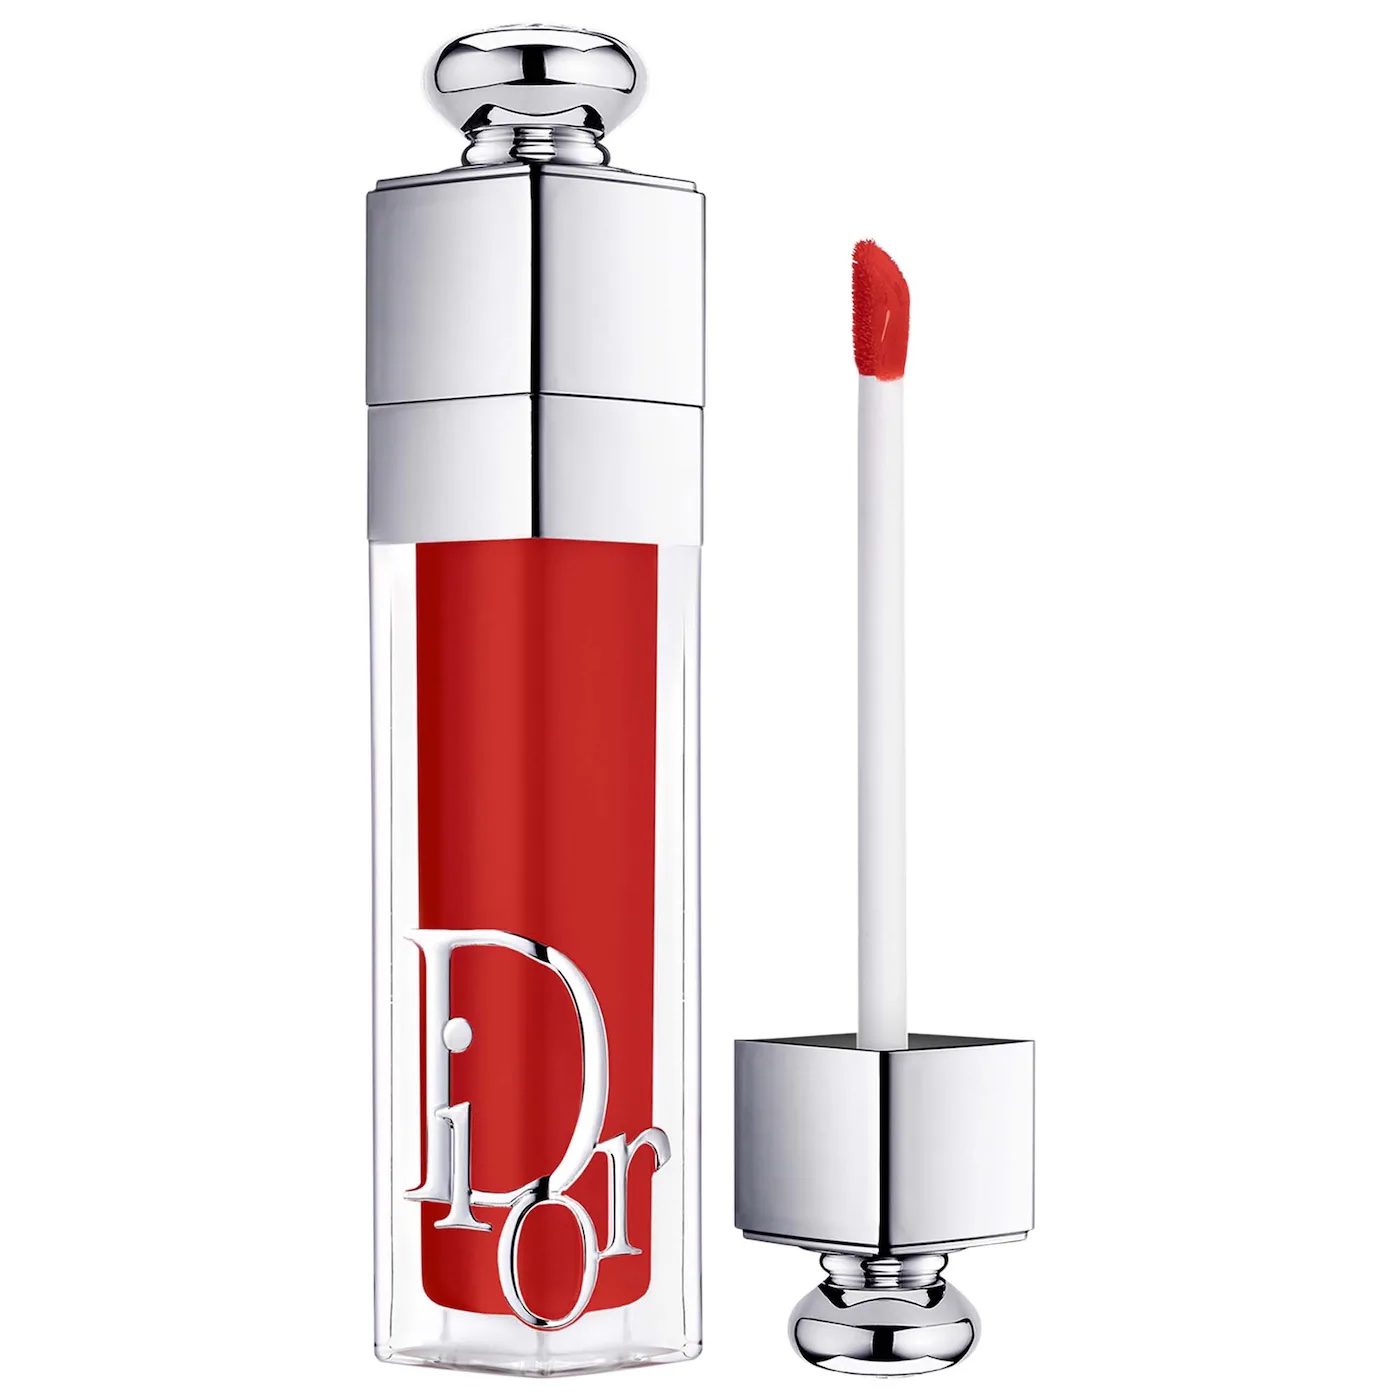 Dior Lip Maximizer in red color.